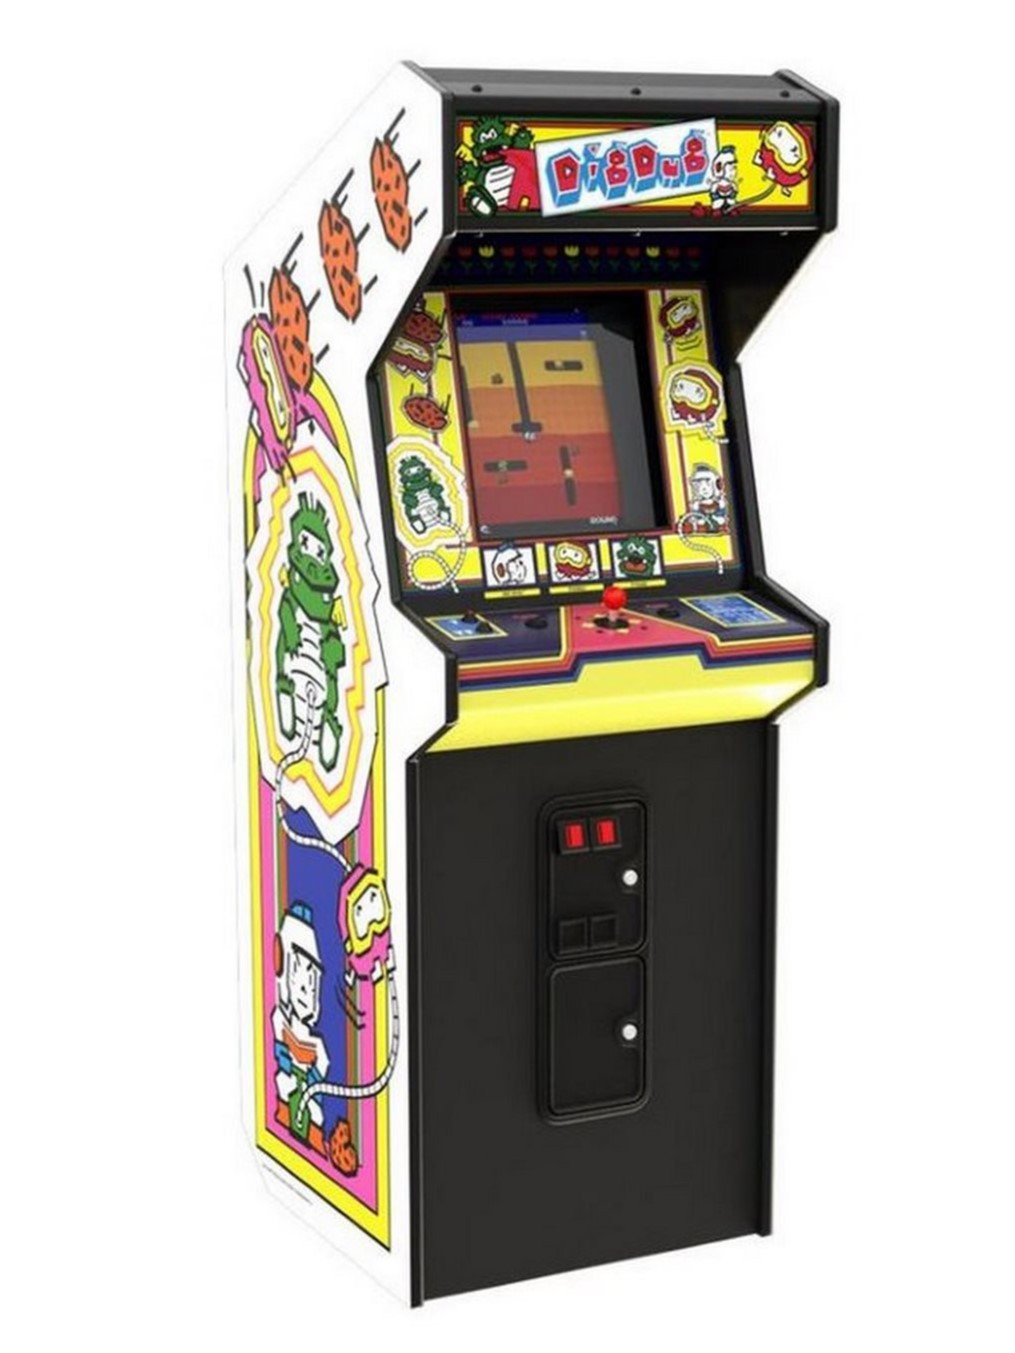 rebaja a lo grande esta máquina arcade de Atari con 14